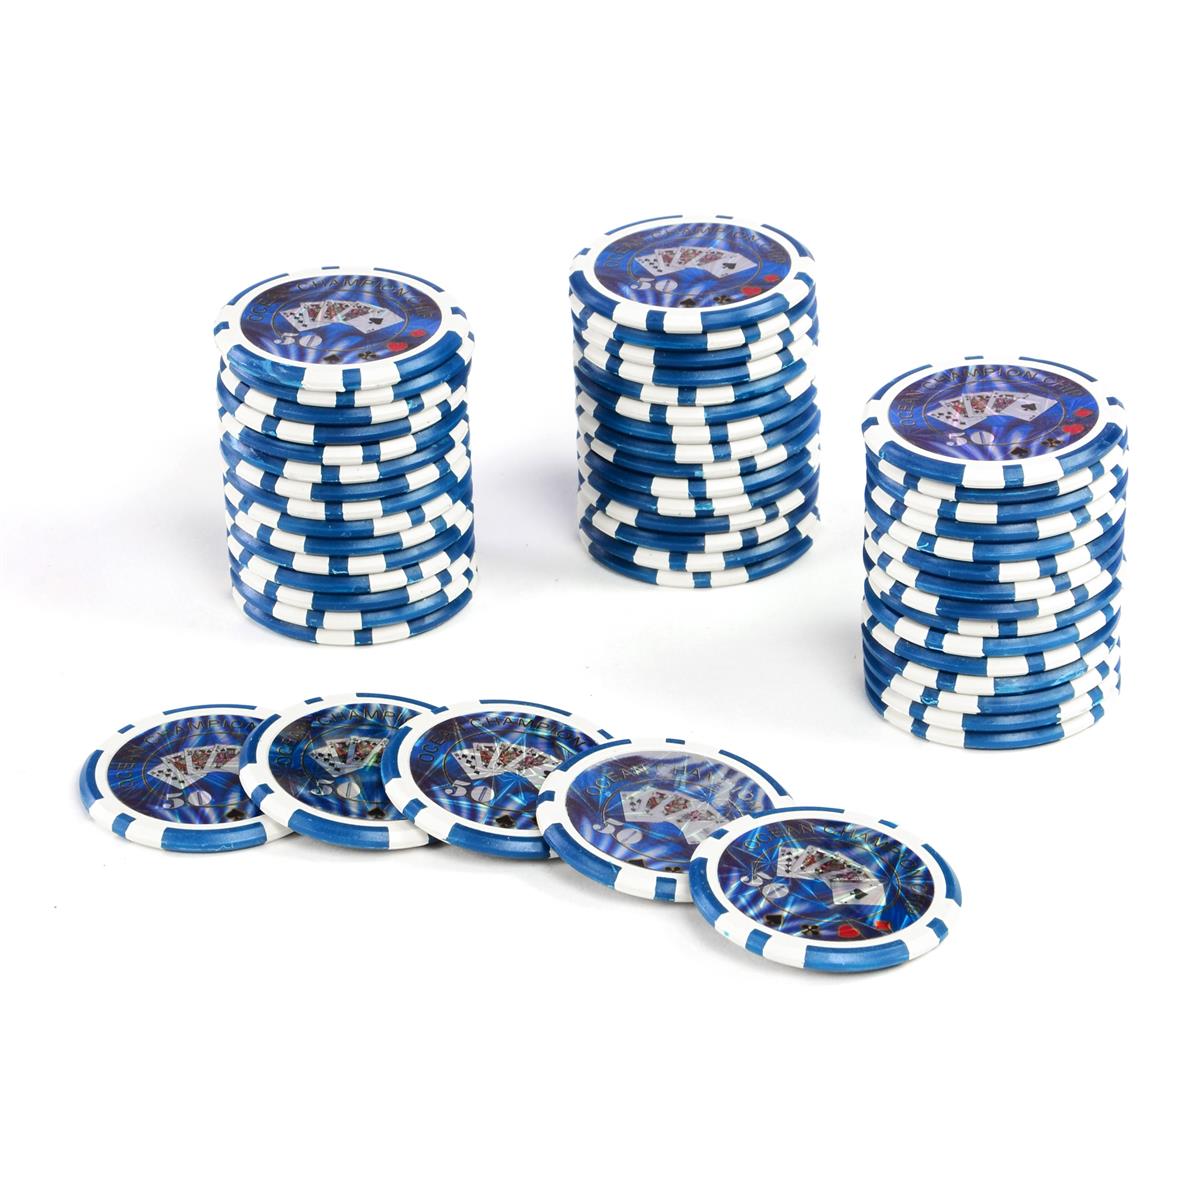 50 Poker-Chips Wert 50 Laserchip 12g Metallkern OCEAN-CHAMPION-CHIP abgerundet